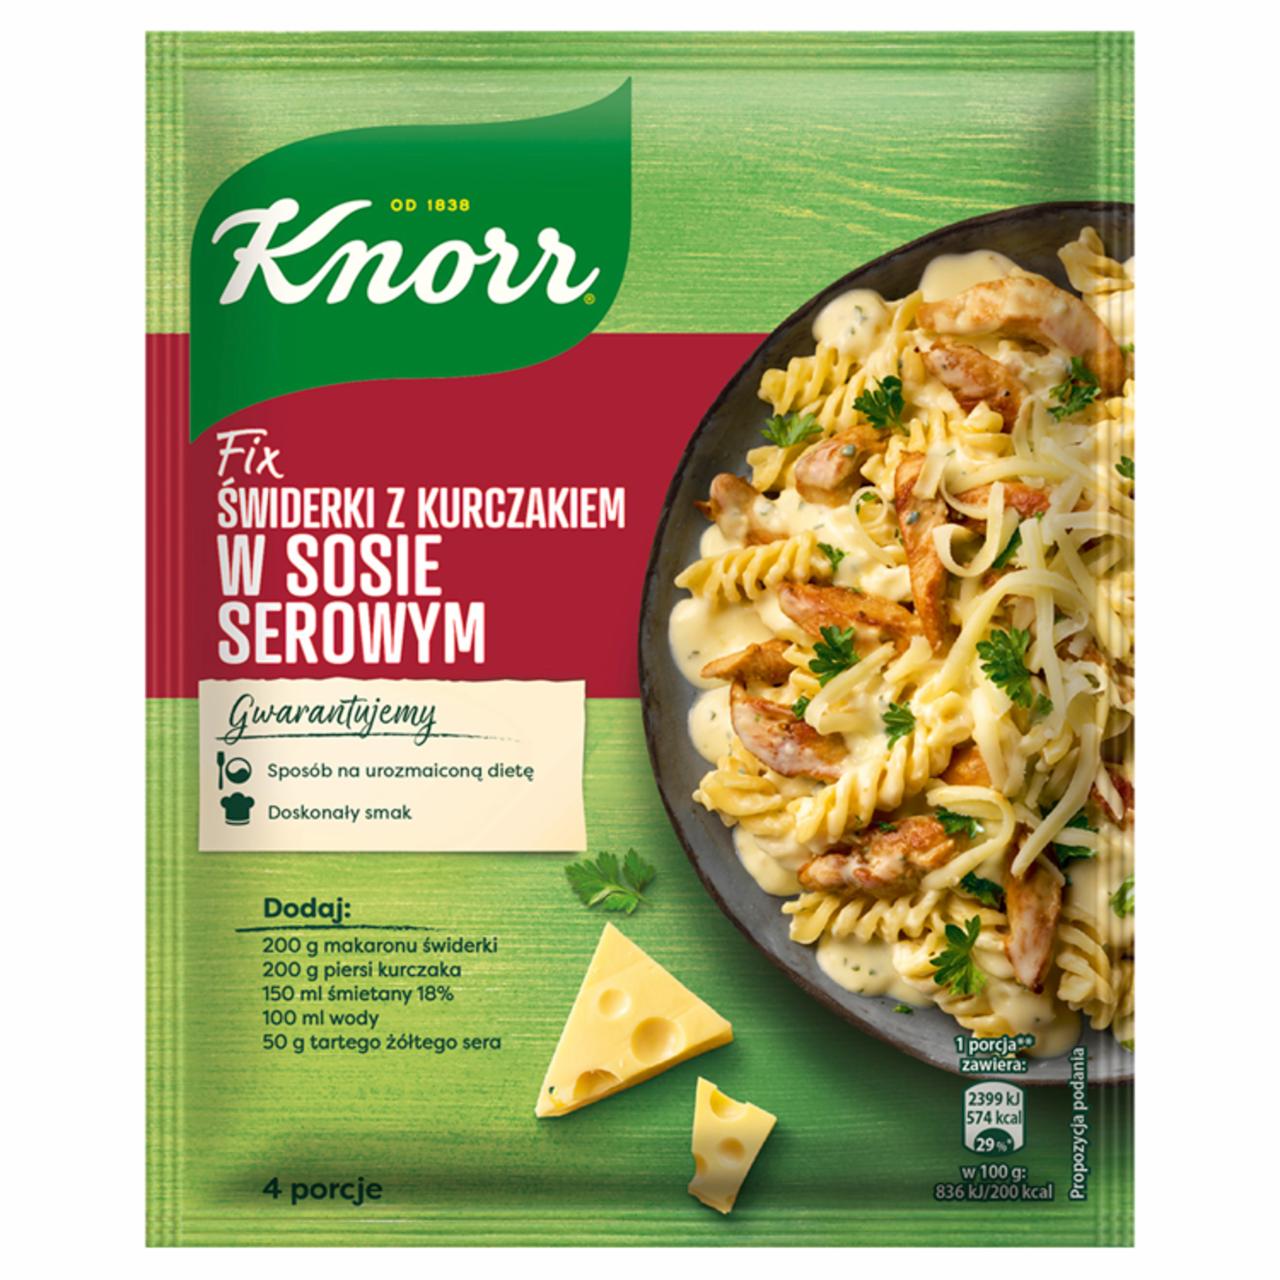 Zdjęcia - Knorr Fix Świderki z kurczakiem w sosie serowym 45 g